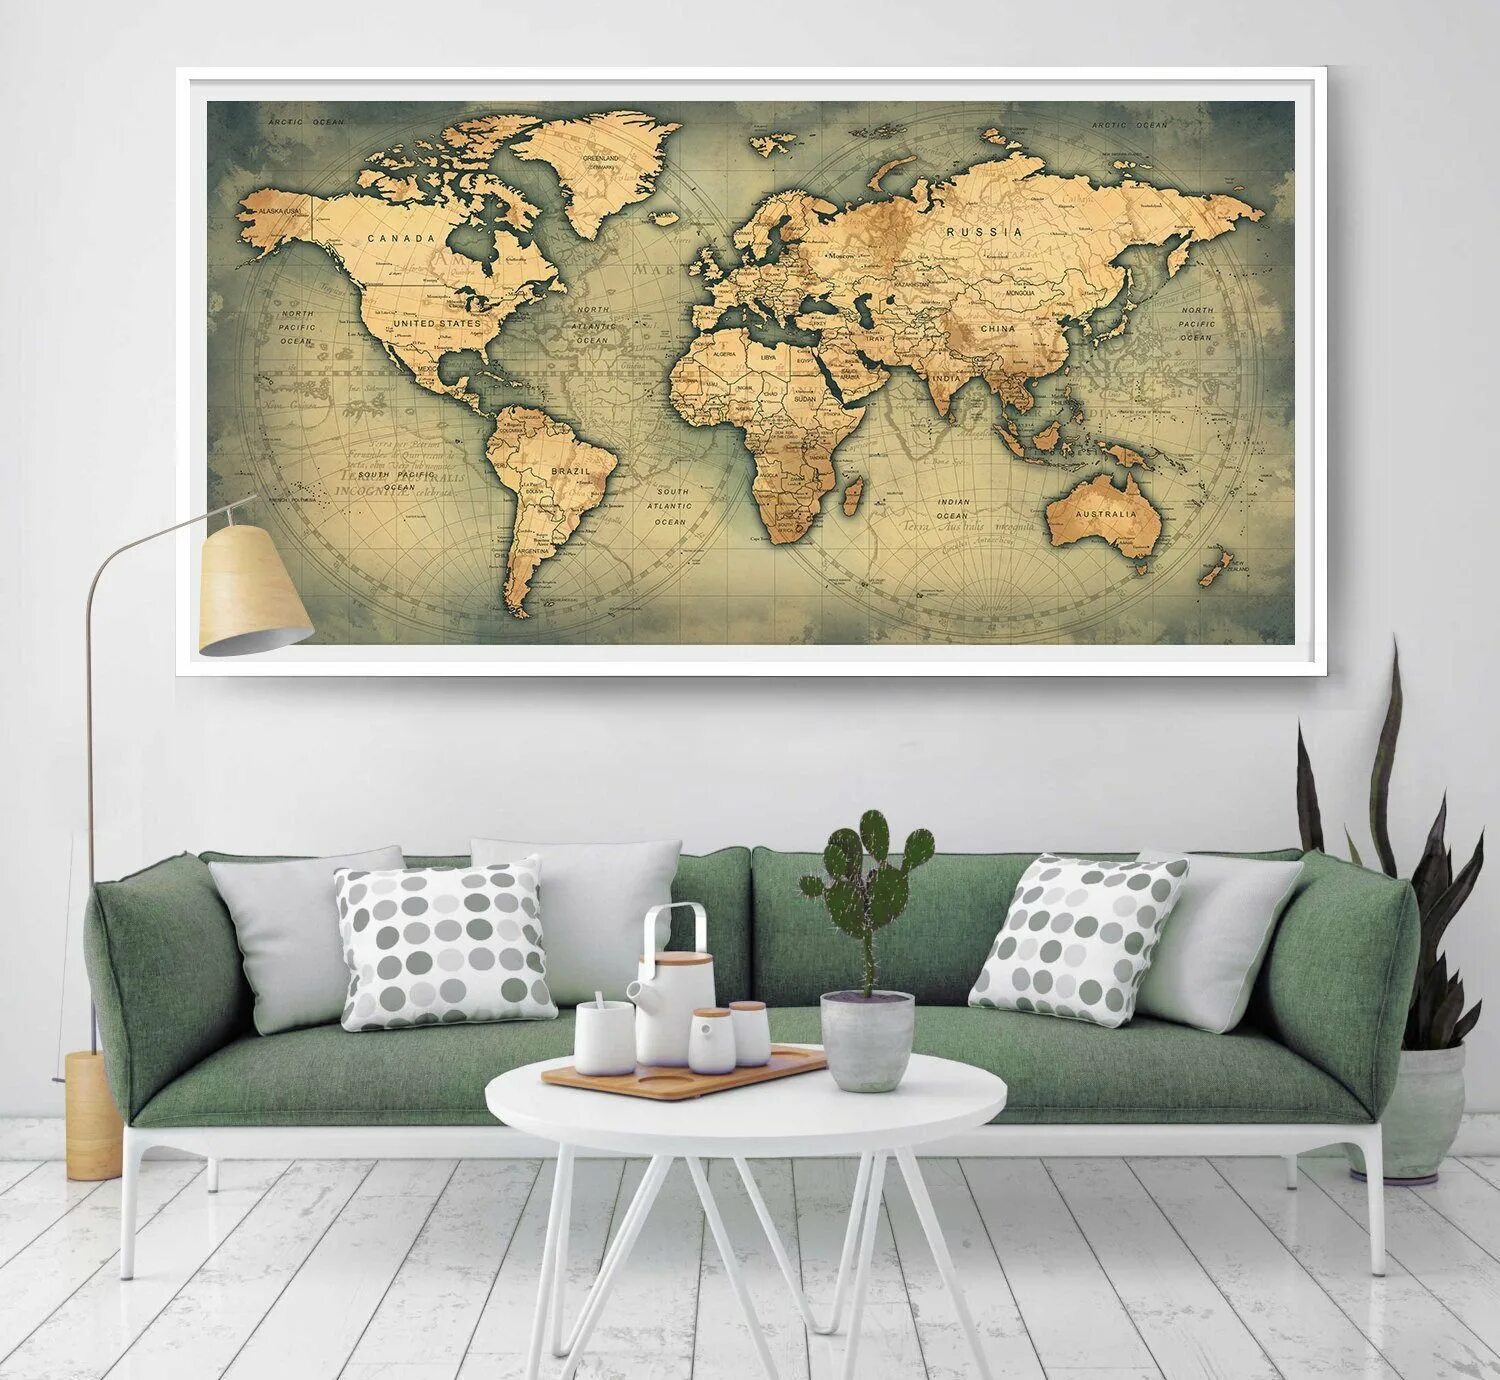 Географические карты дома. Географические карты в интерьере. Обои карта мира в интерьере. Старинная карта мира в интерьере. Карта мира на стене в интерьере.